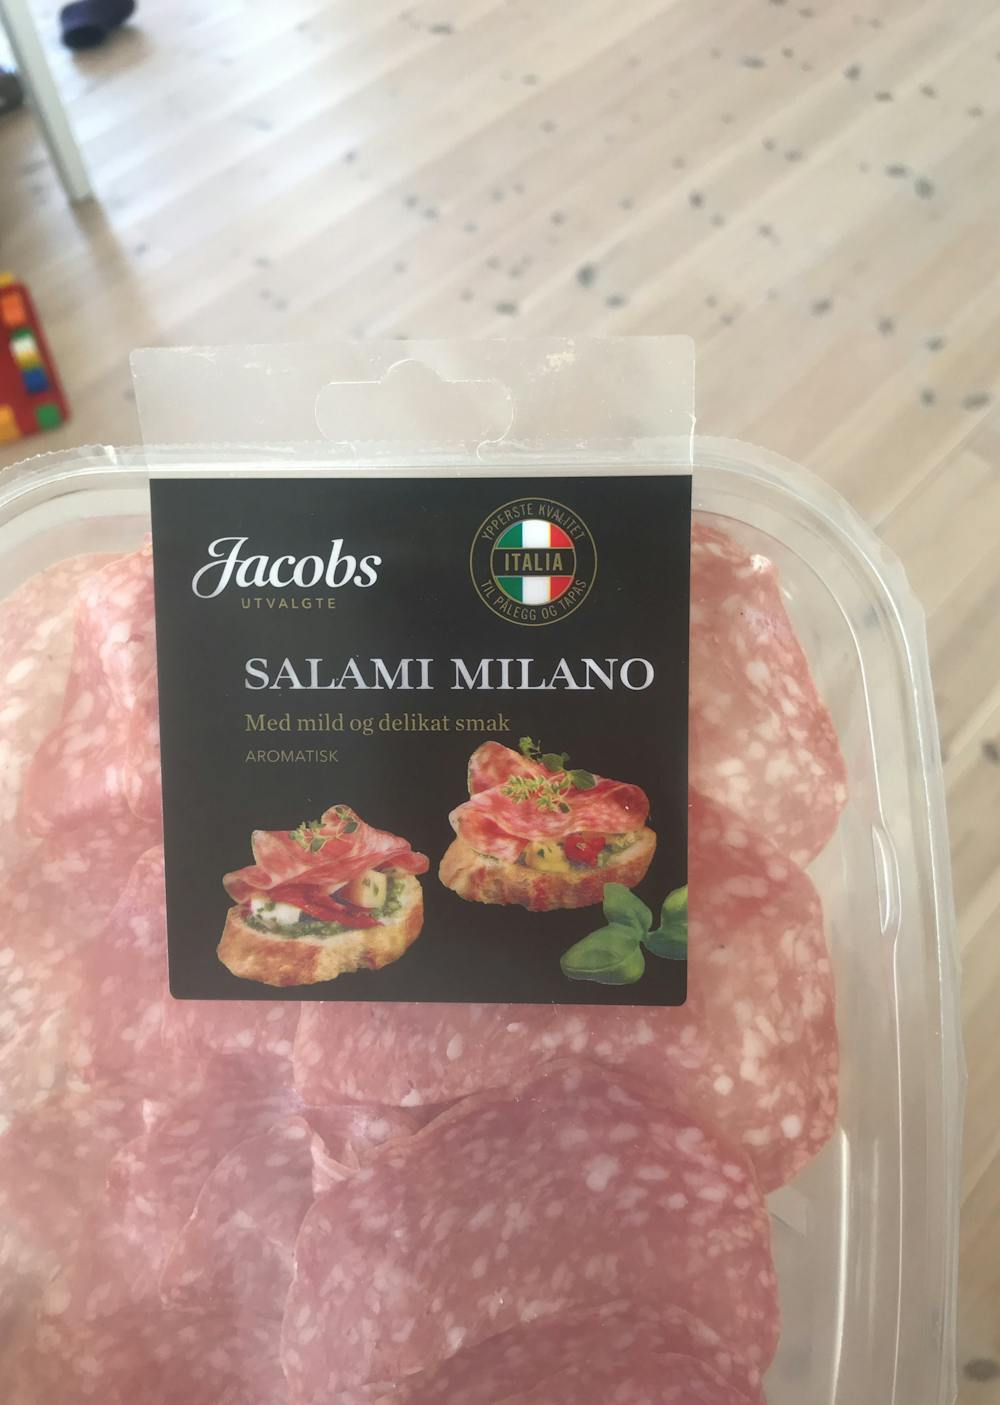 Salami milano, Jacobs utvalgte